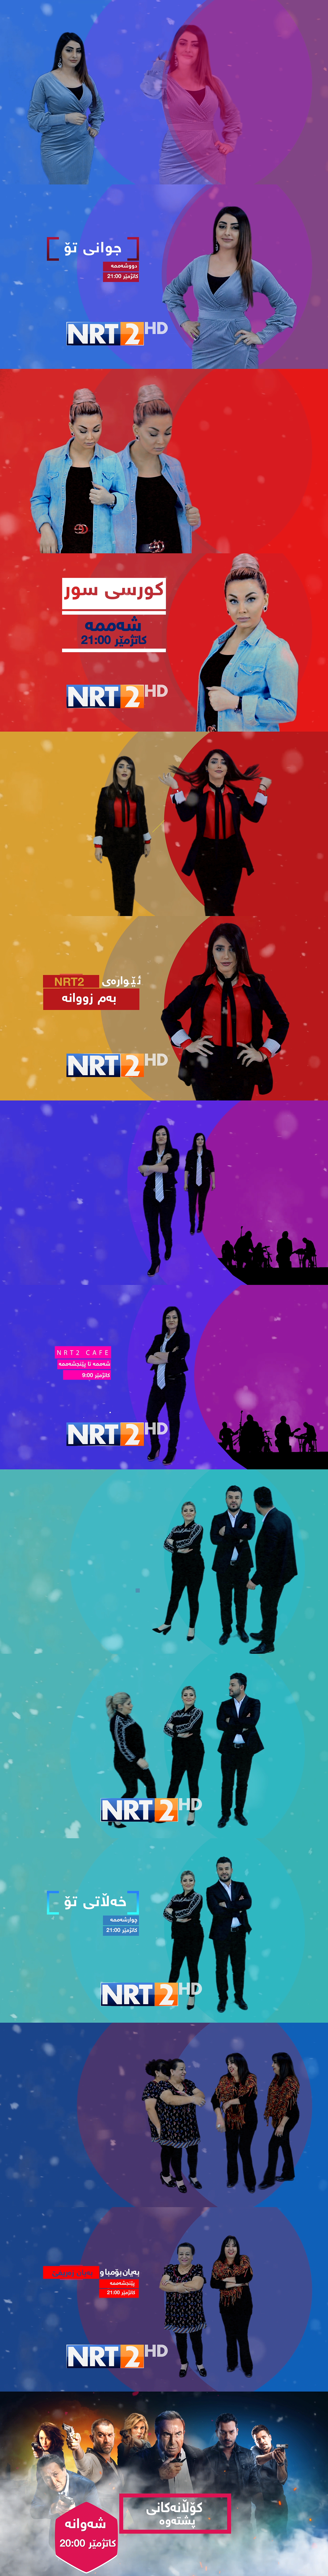 NRT2 nalia iraqi iraq kurdish Kurdistan network television istanbul HD